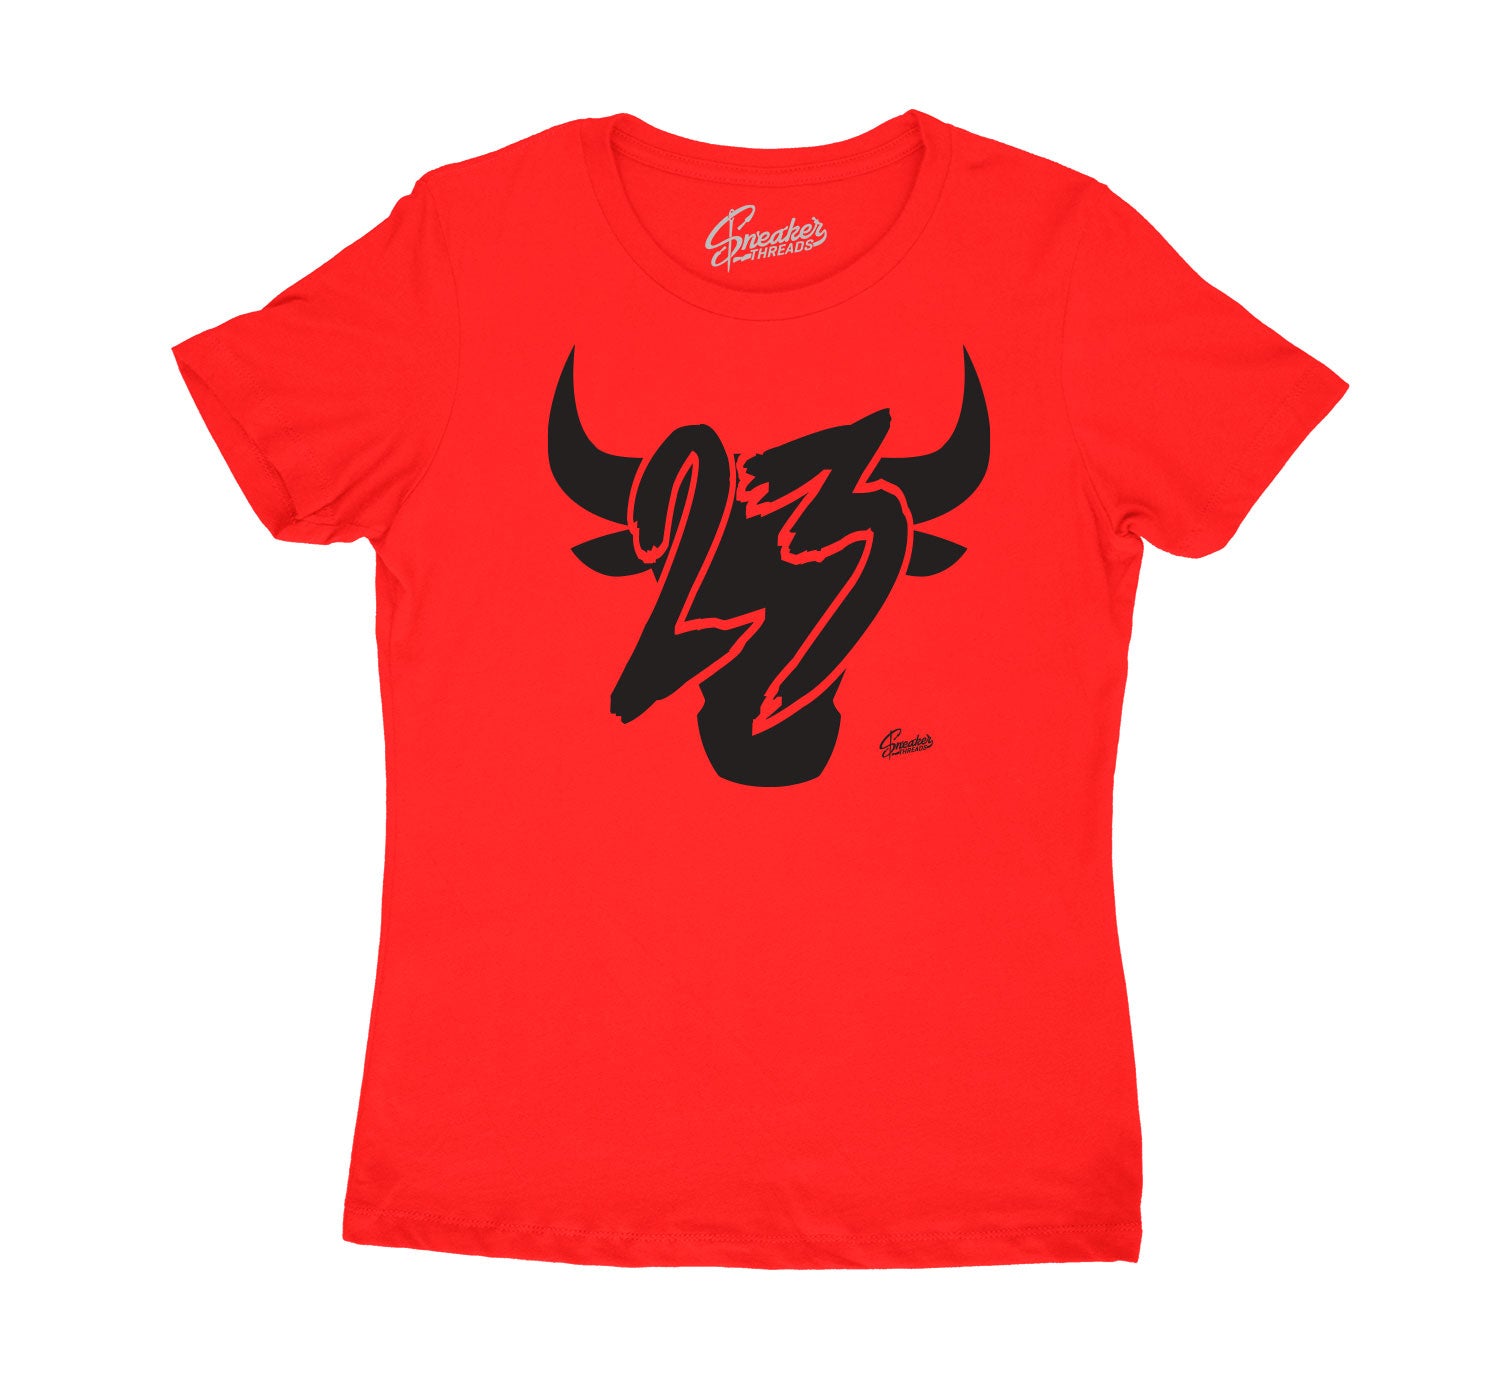 Womens Raging Bull 5 Shirt - Toro - Red